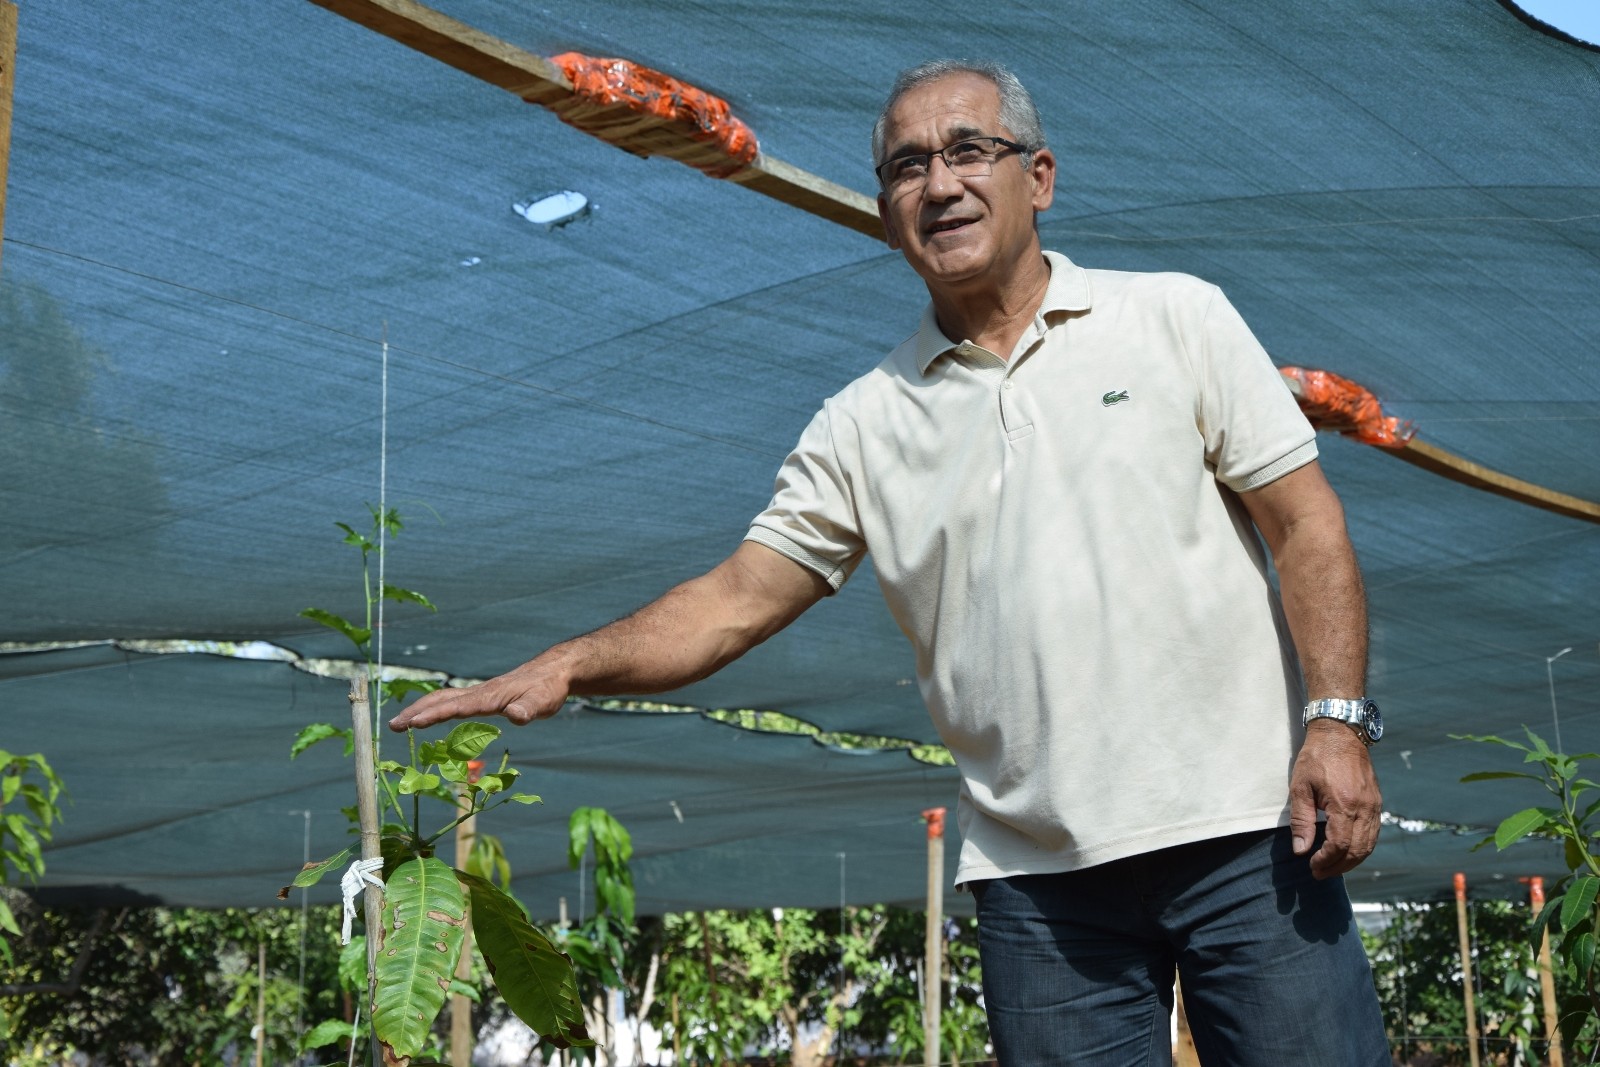 Emekli okul müdüründen tropikal meyve bahçesi #antalya